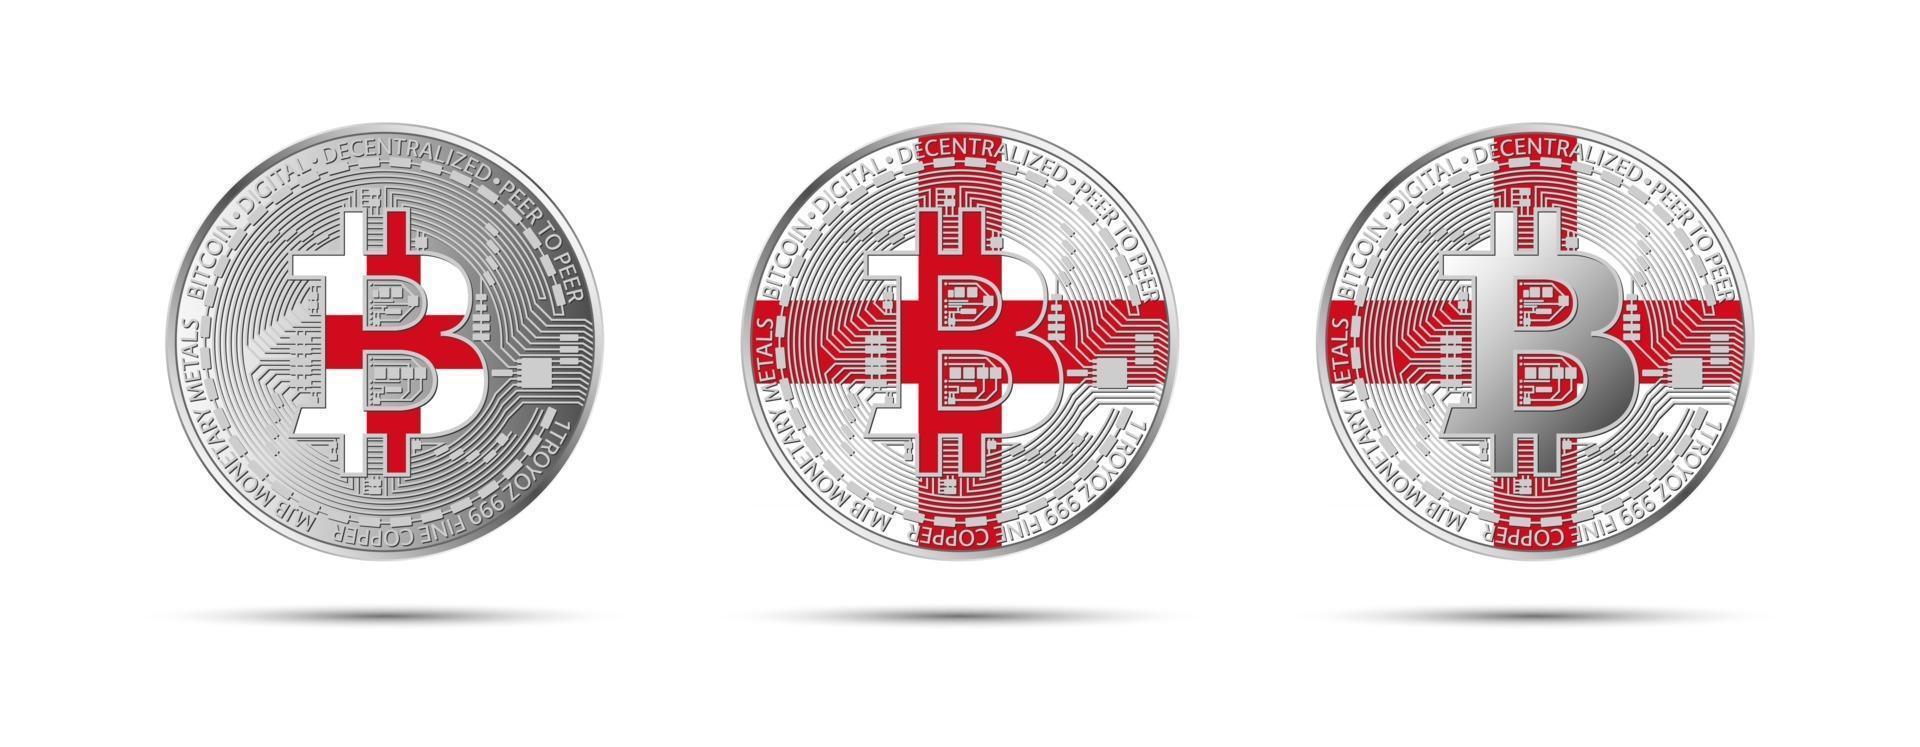 três moedas criptográficas bitcoin com a bandeira da inglaterra dinheiro do futuro ilustração vetorial de criptomoeda moderna vetor